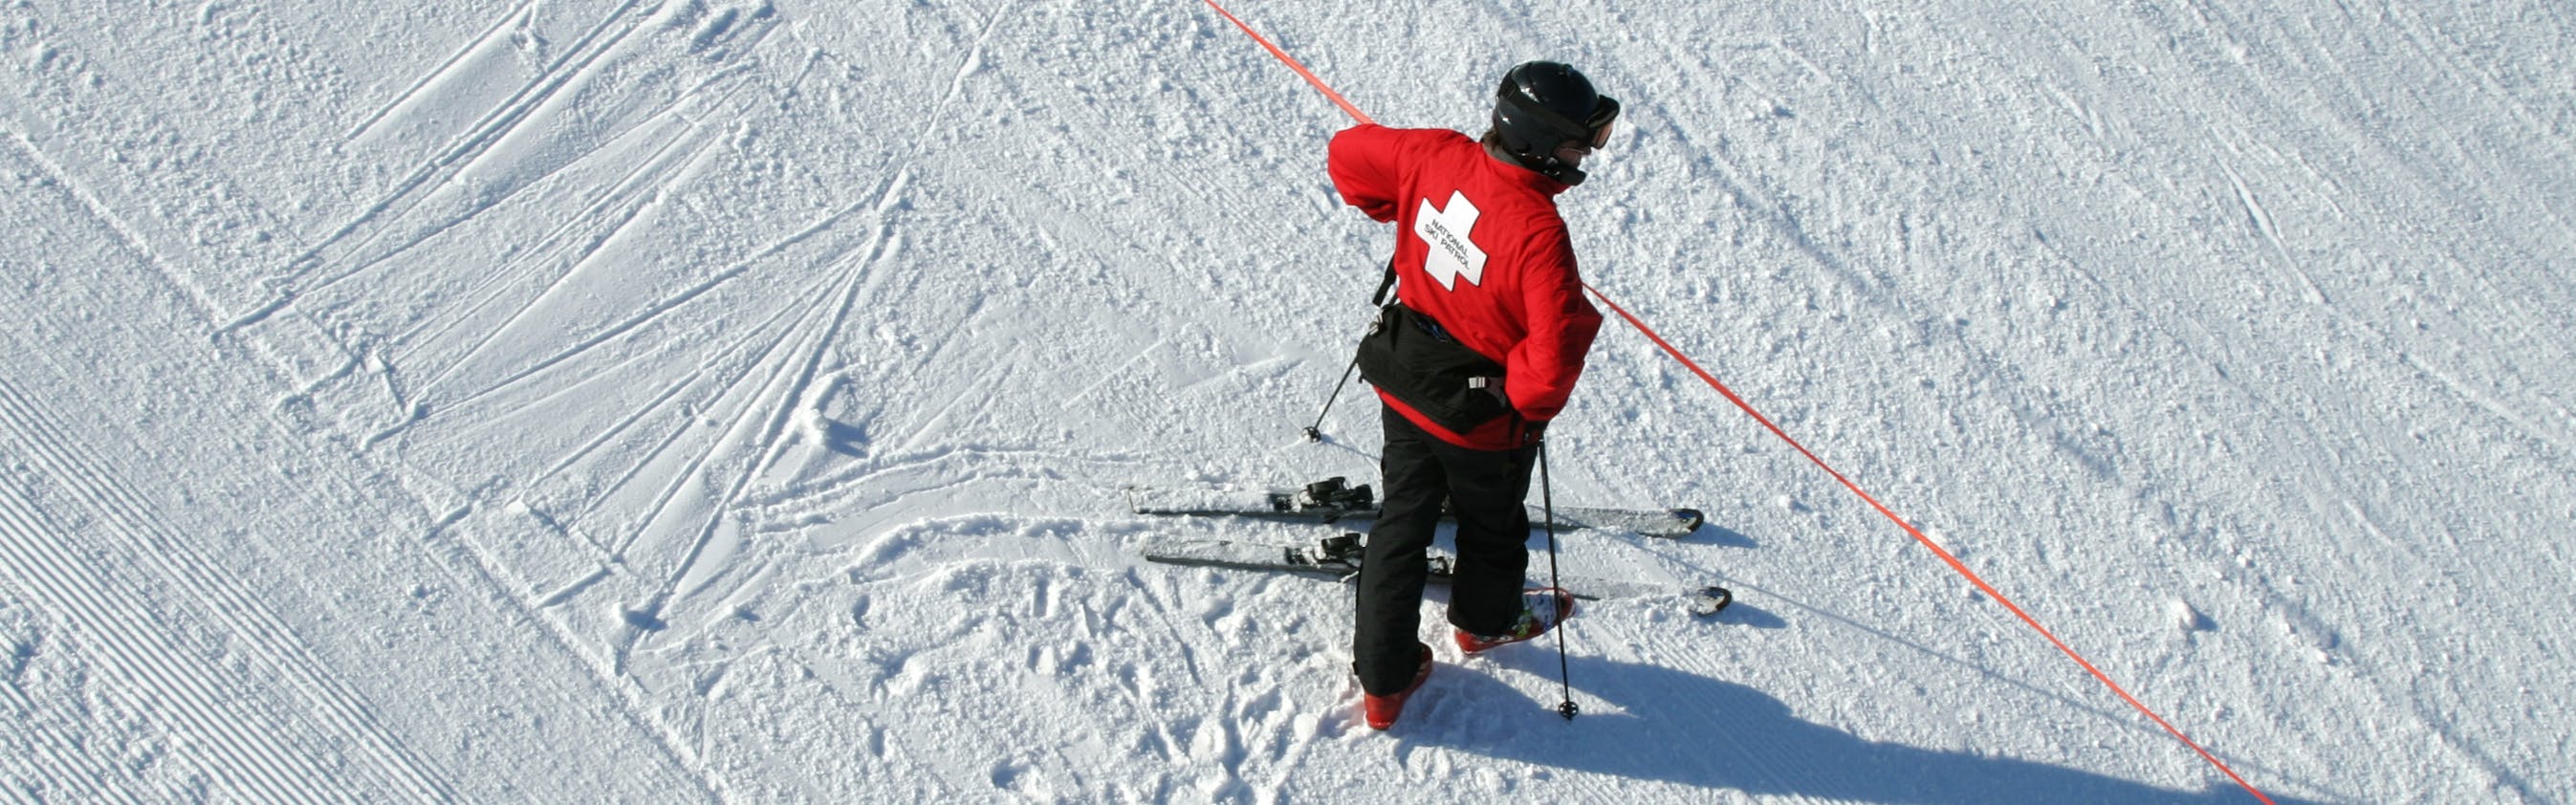 A member of the ski patrol checks a red boundary rope